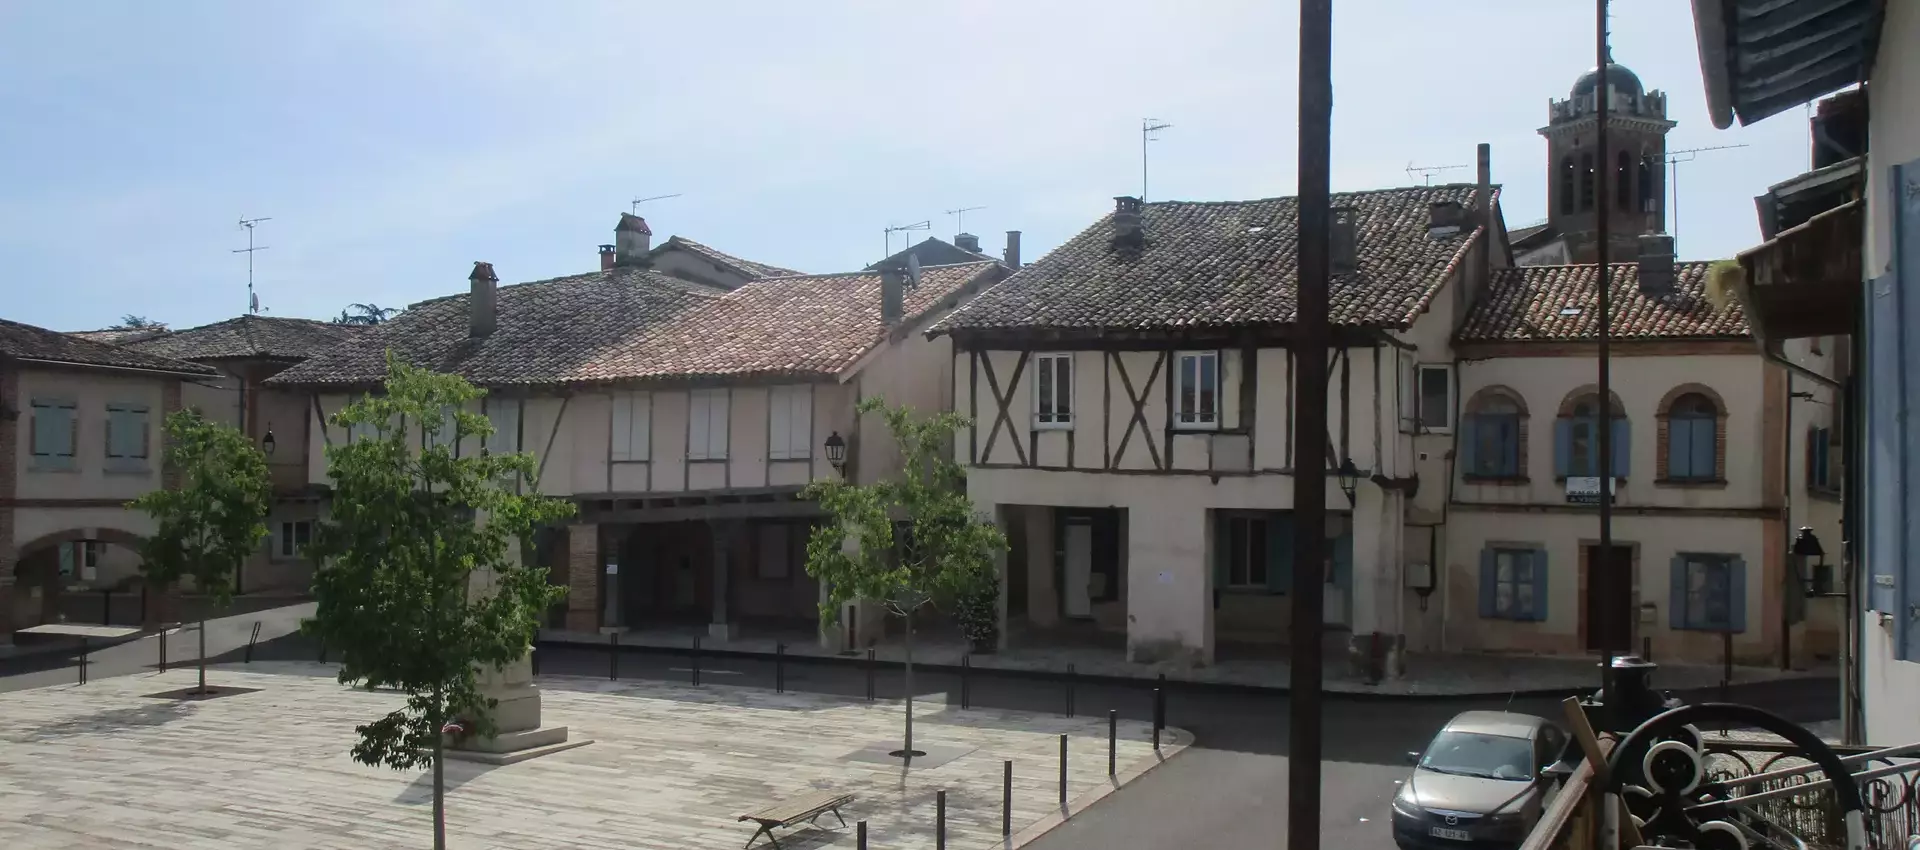 Bienvenue sur le site officiel de la mairie de Réalville (48) Lozère